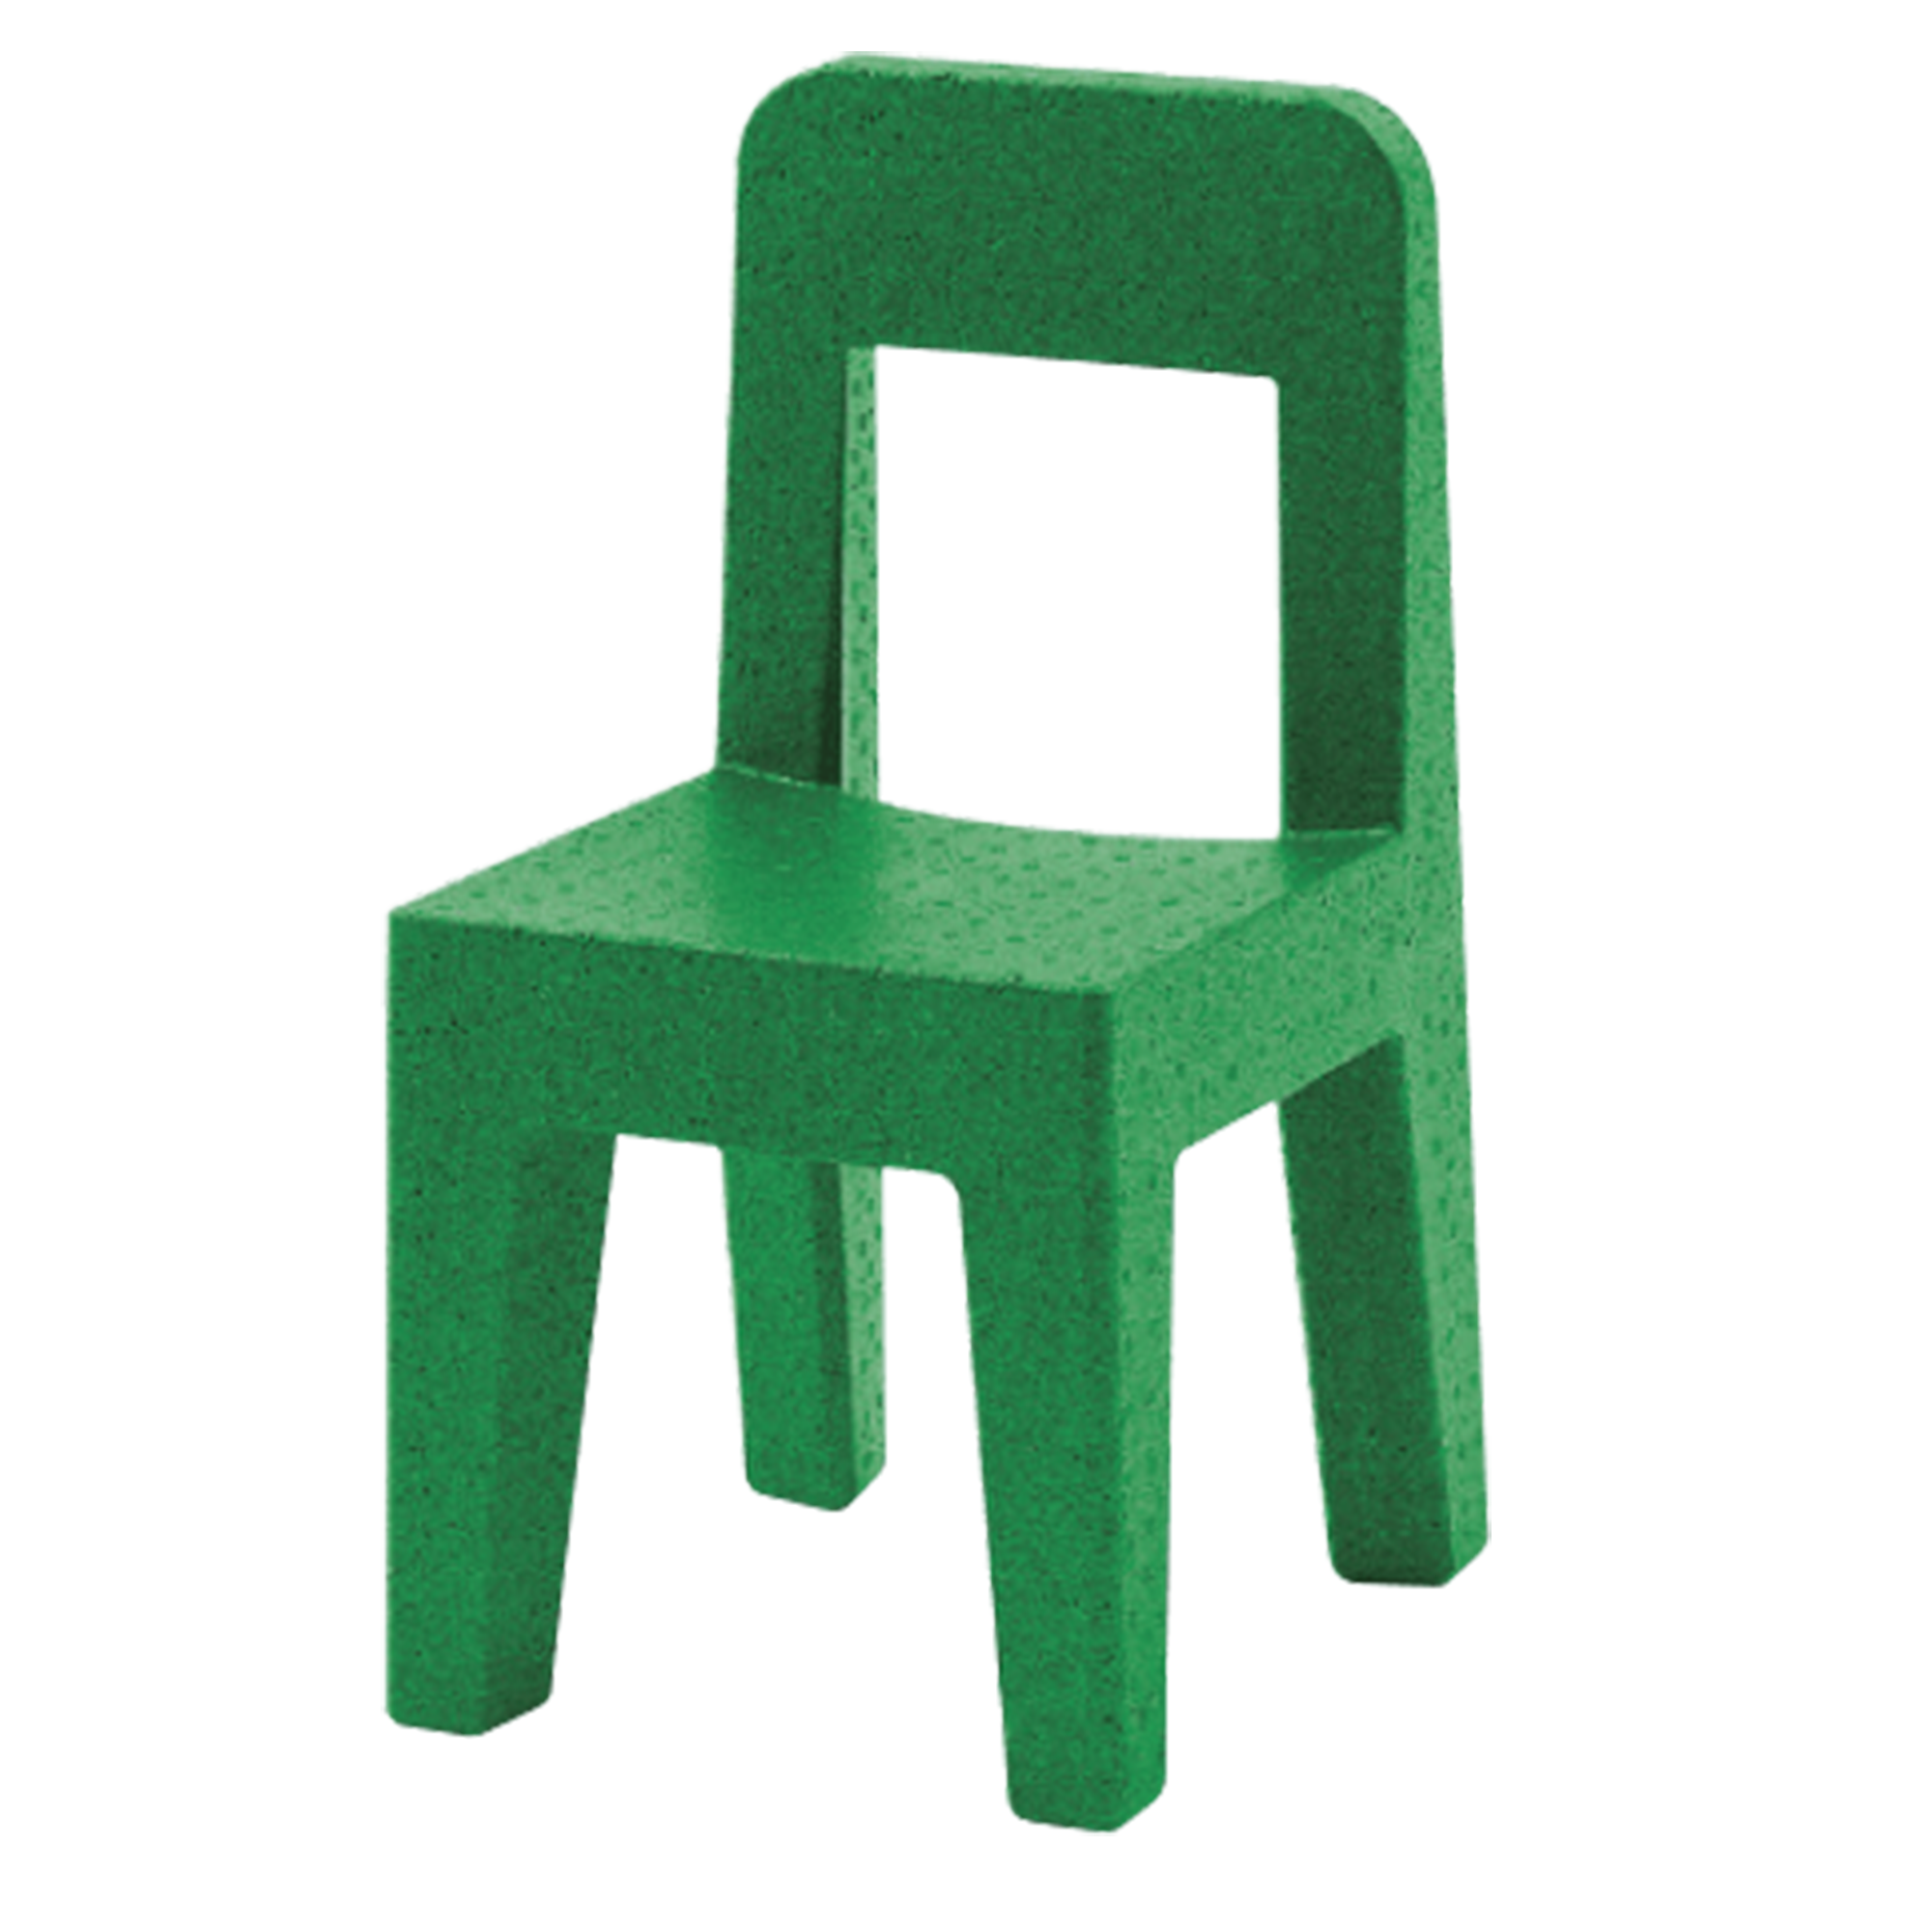 Seggiolina Pop scaun din plastic pentru copii